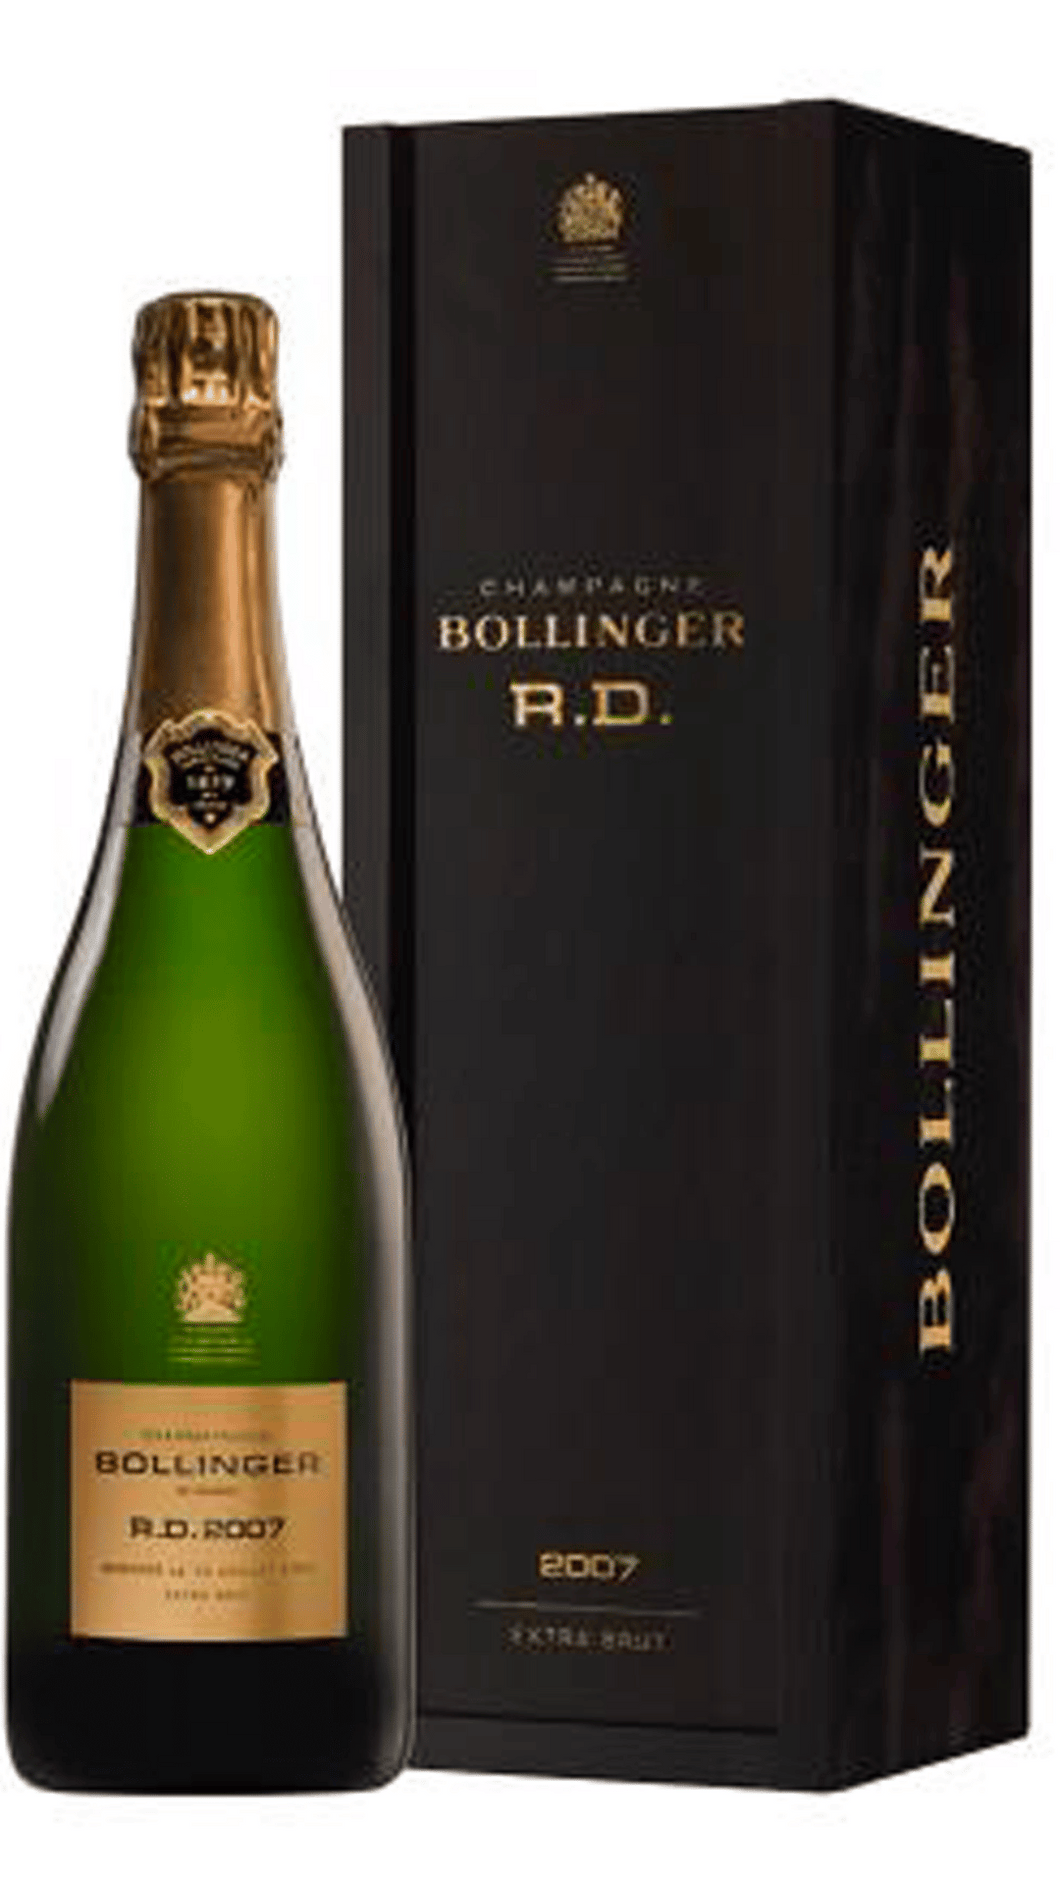 Champagne R.D. 2007 Bollinger astucciato